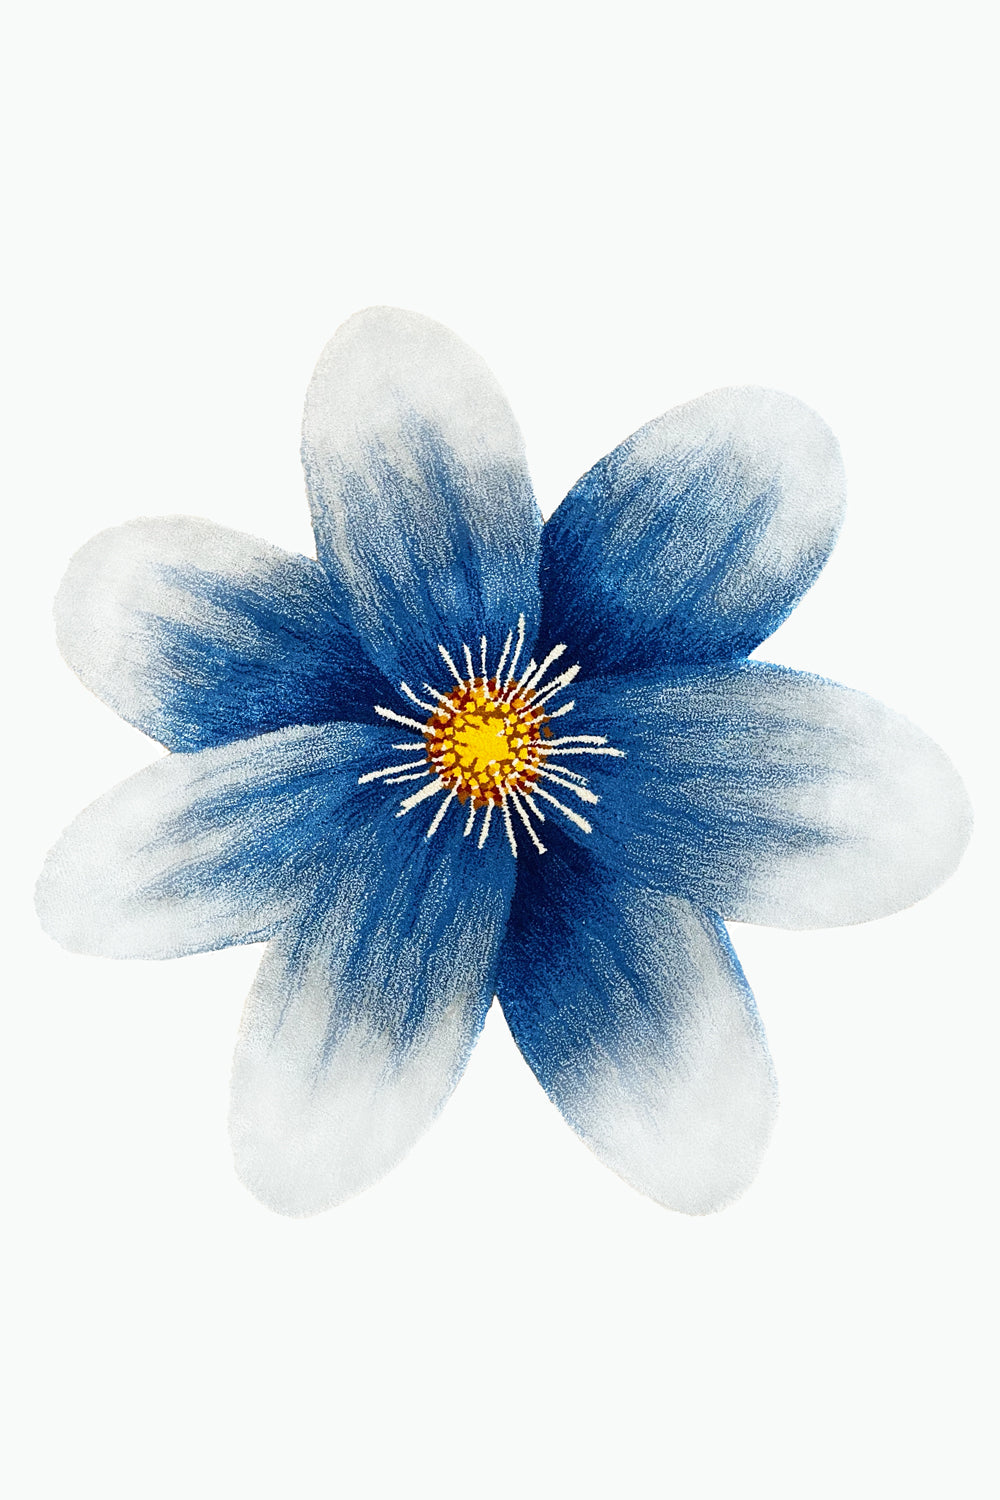 Blue Daisy Rug